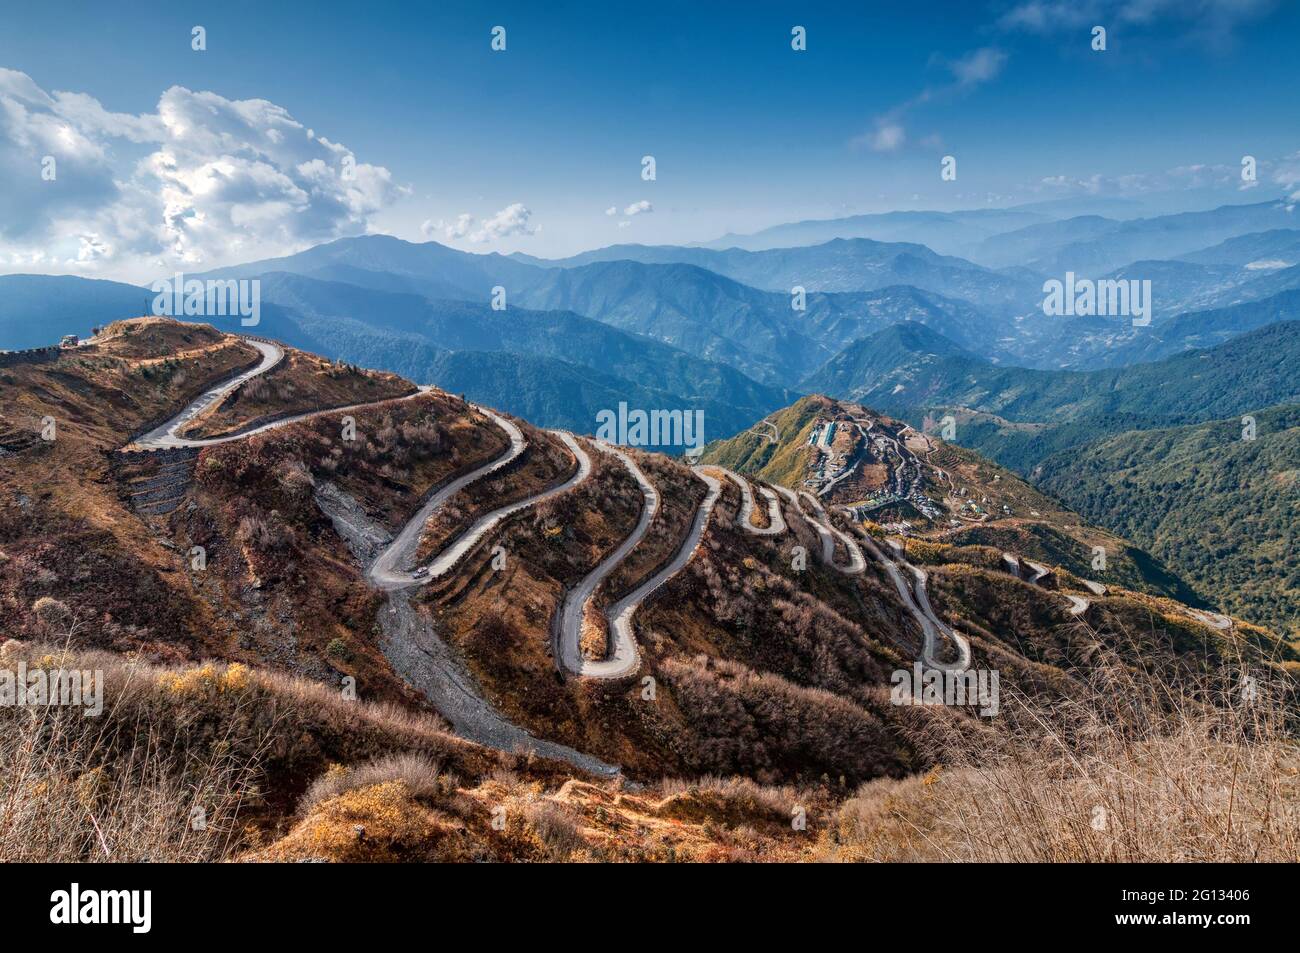 Schöne kurvige Straßen auf der alten Seidenstraße, Seidenhandelsroute zwischen China und der indischen Grenze, Sikkim, Indien. Teil des OBOR-Projekts von China für den Handel. Stockfoto